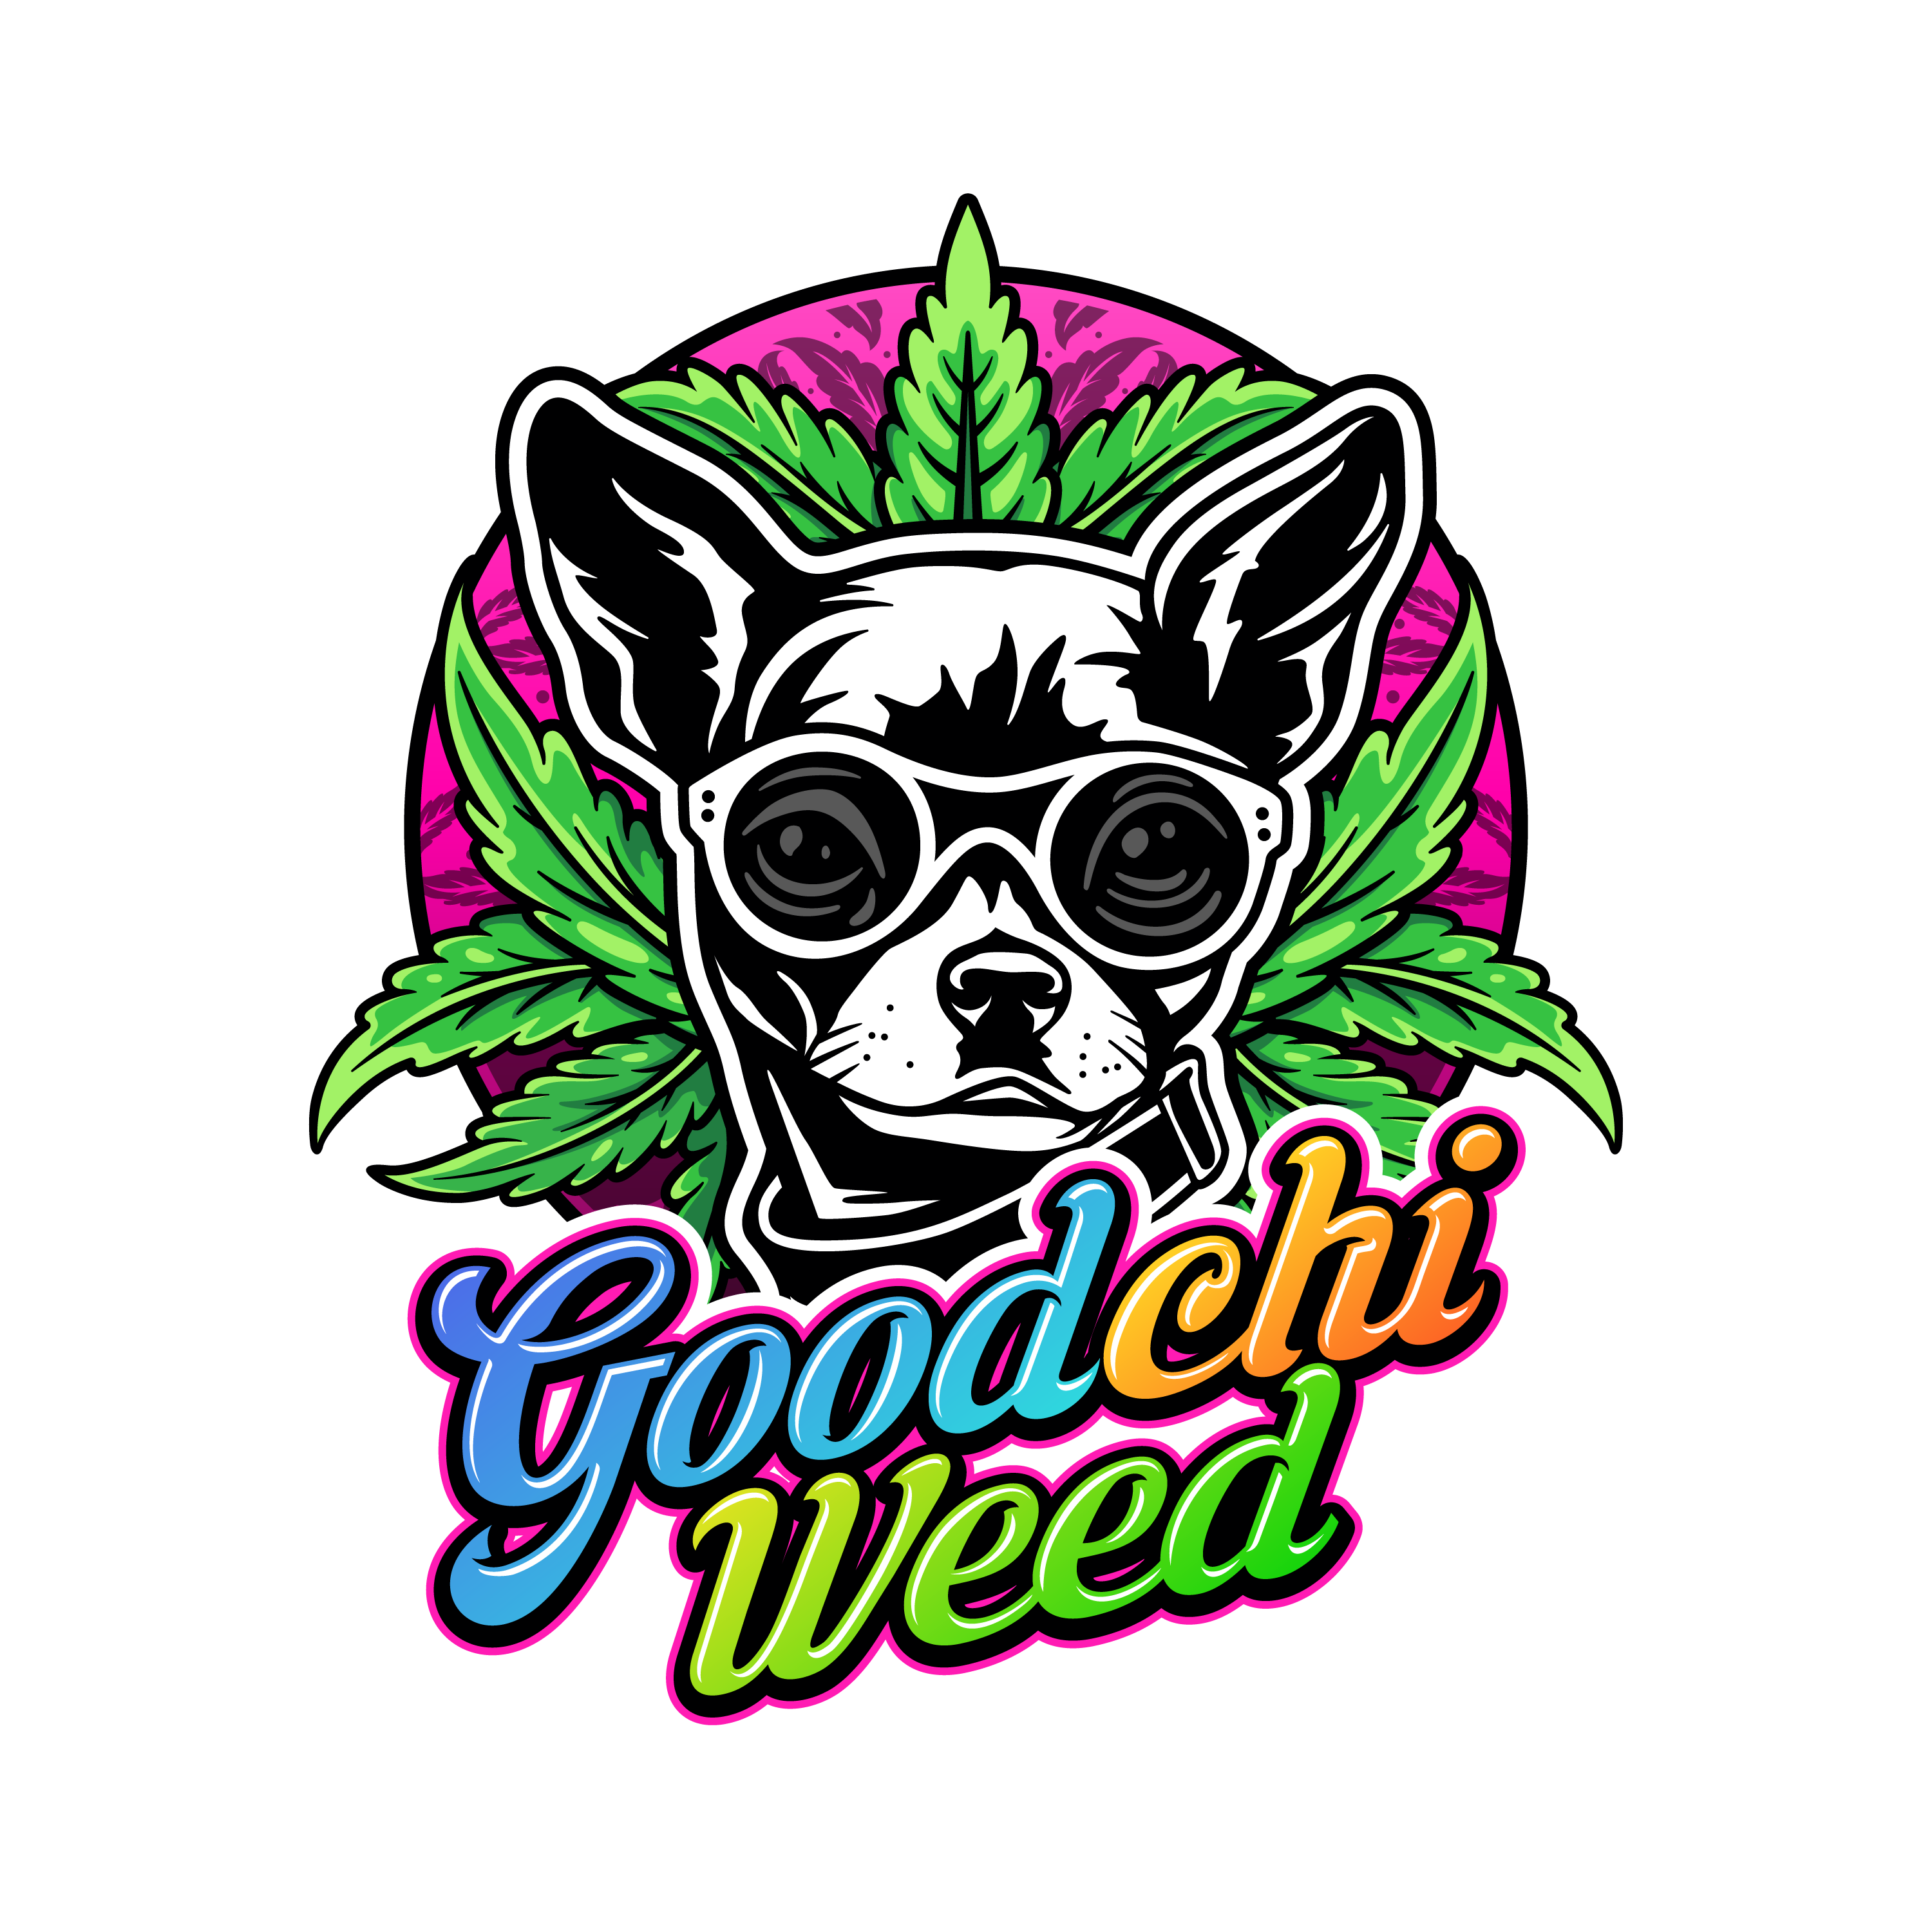 Goodchi Weed